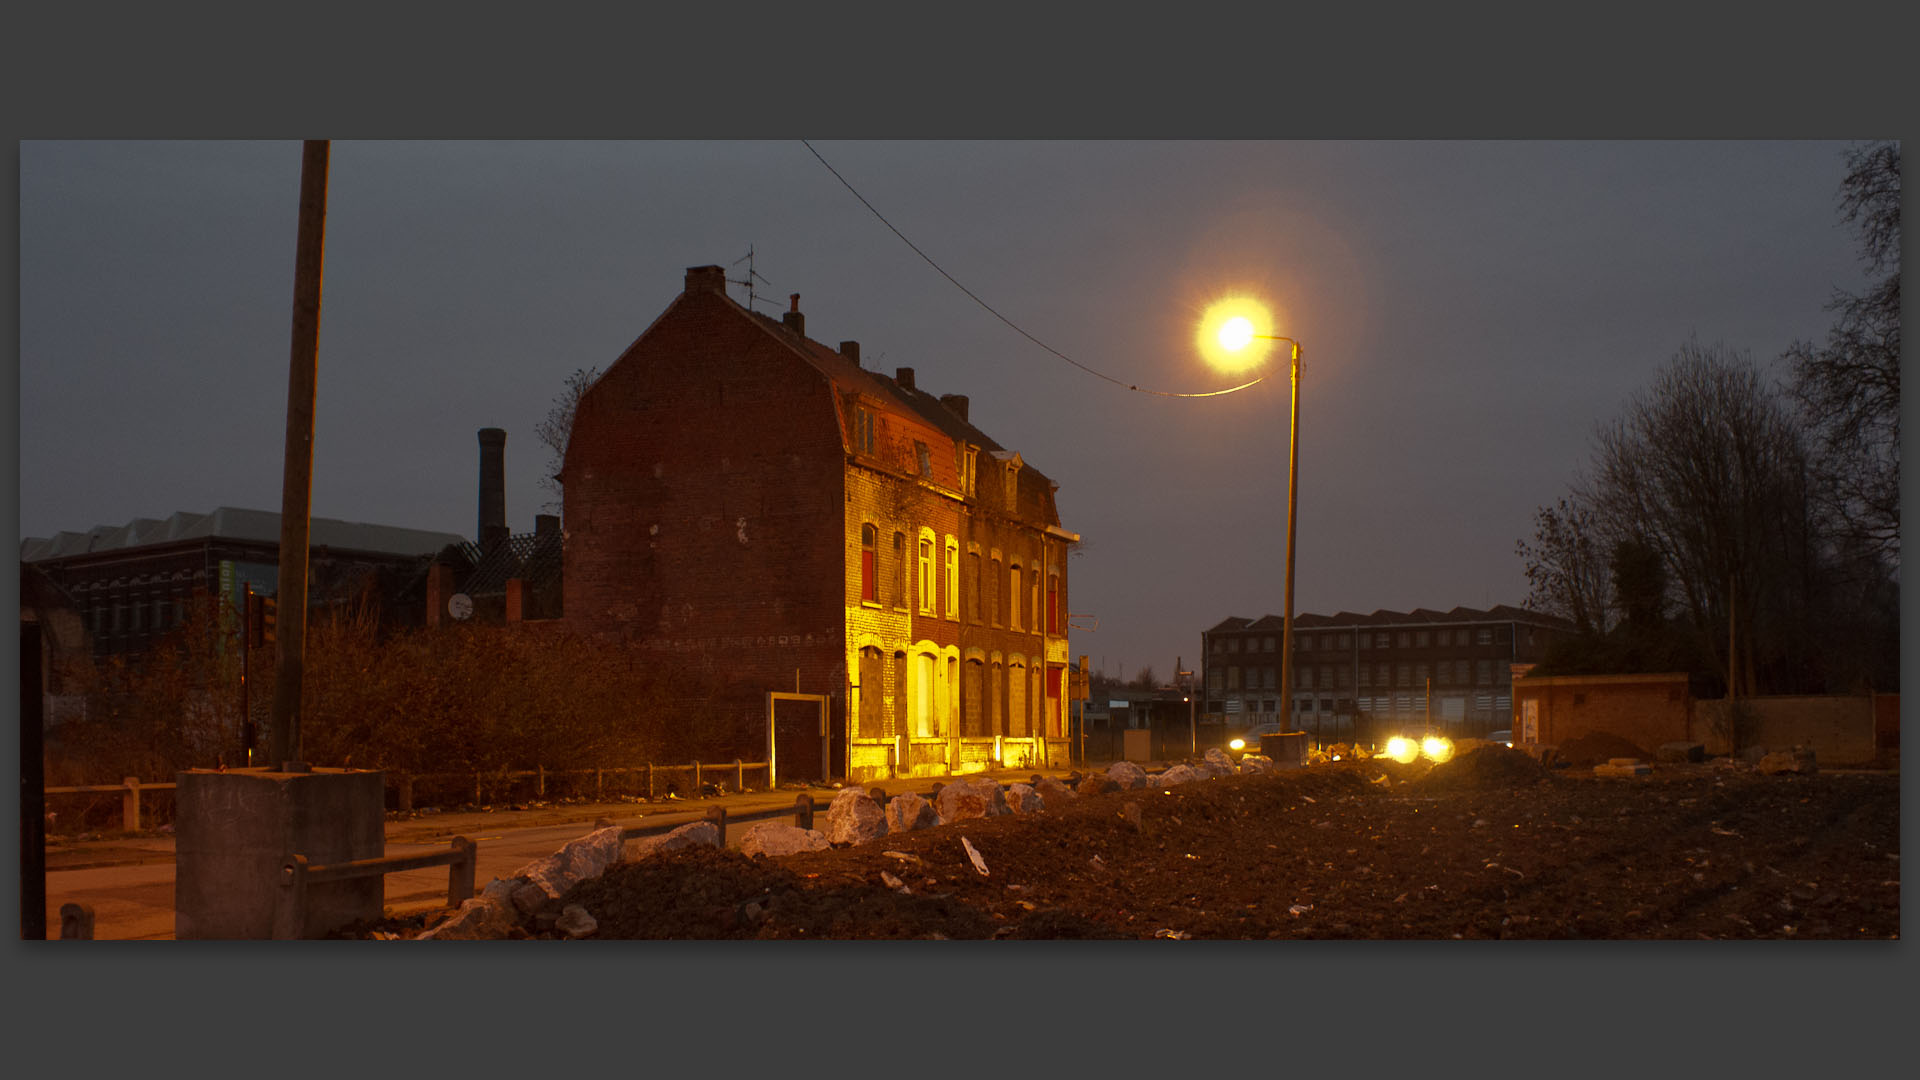 Maisons à l'abandon dans la zone de l'Union, rue Darbo, à Roubaix.